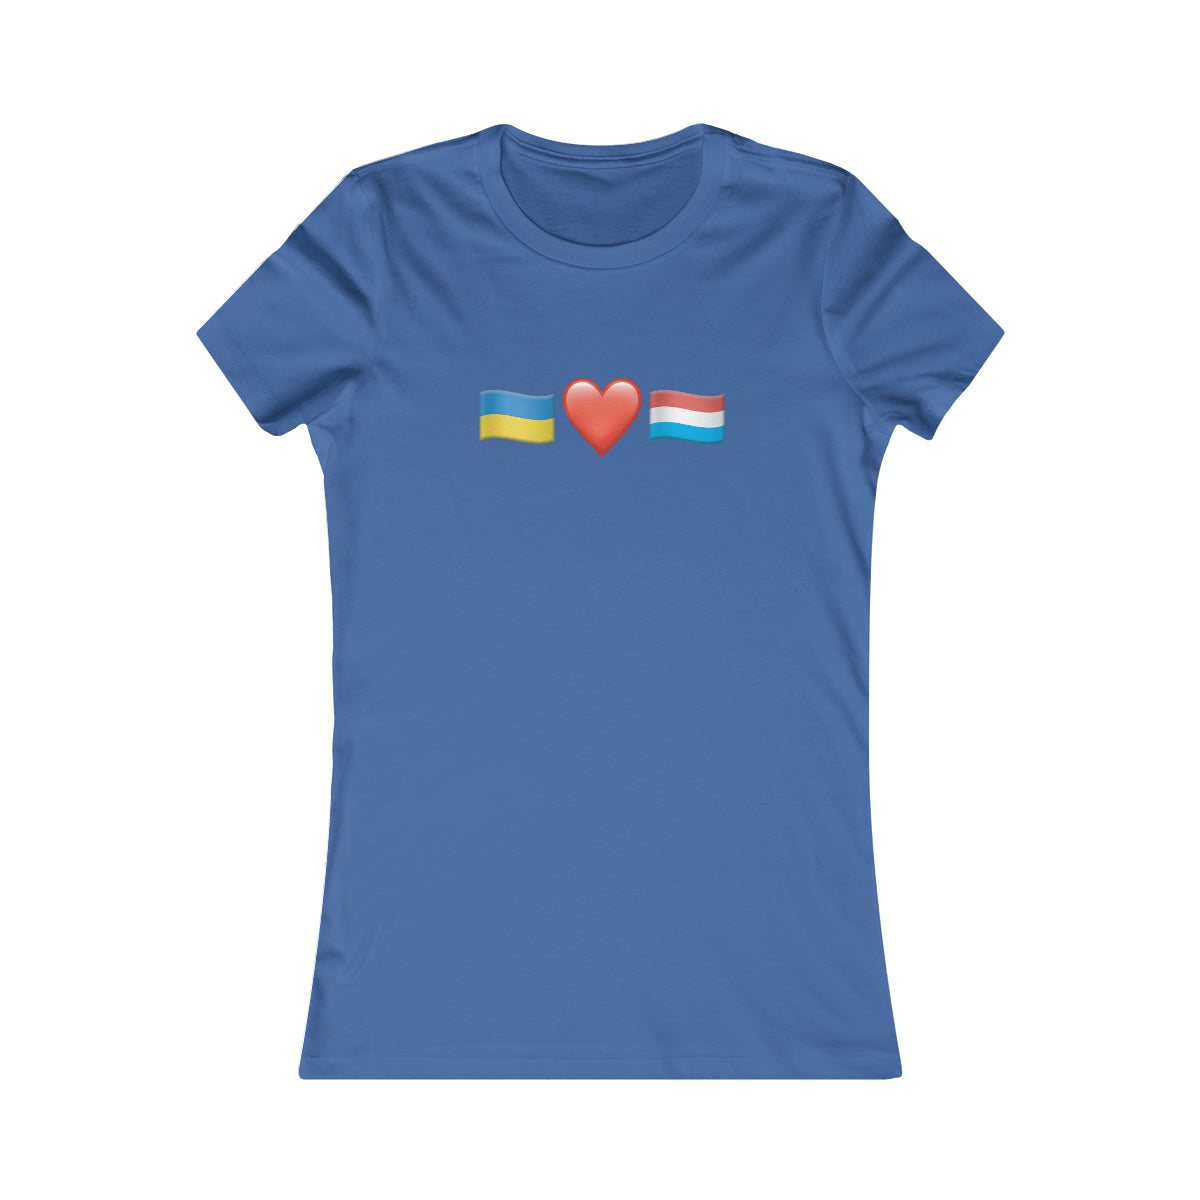 Luxembourg's Support - T-shirt préféré des femmes